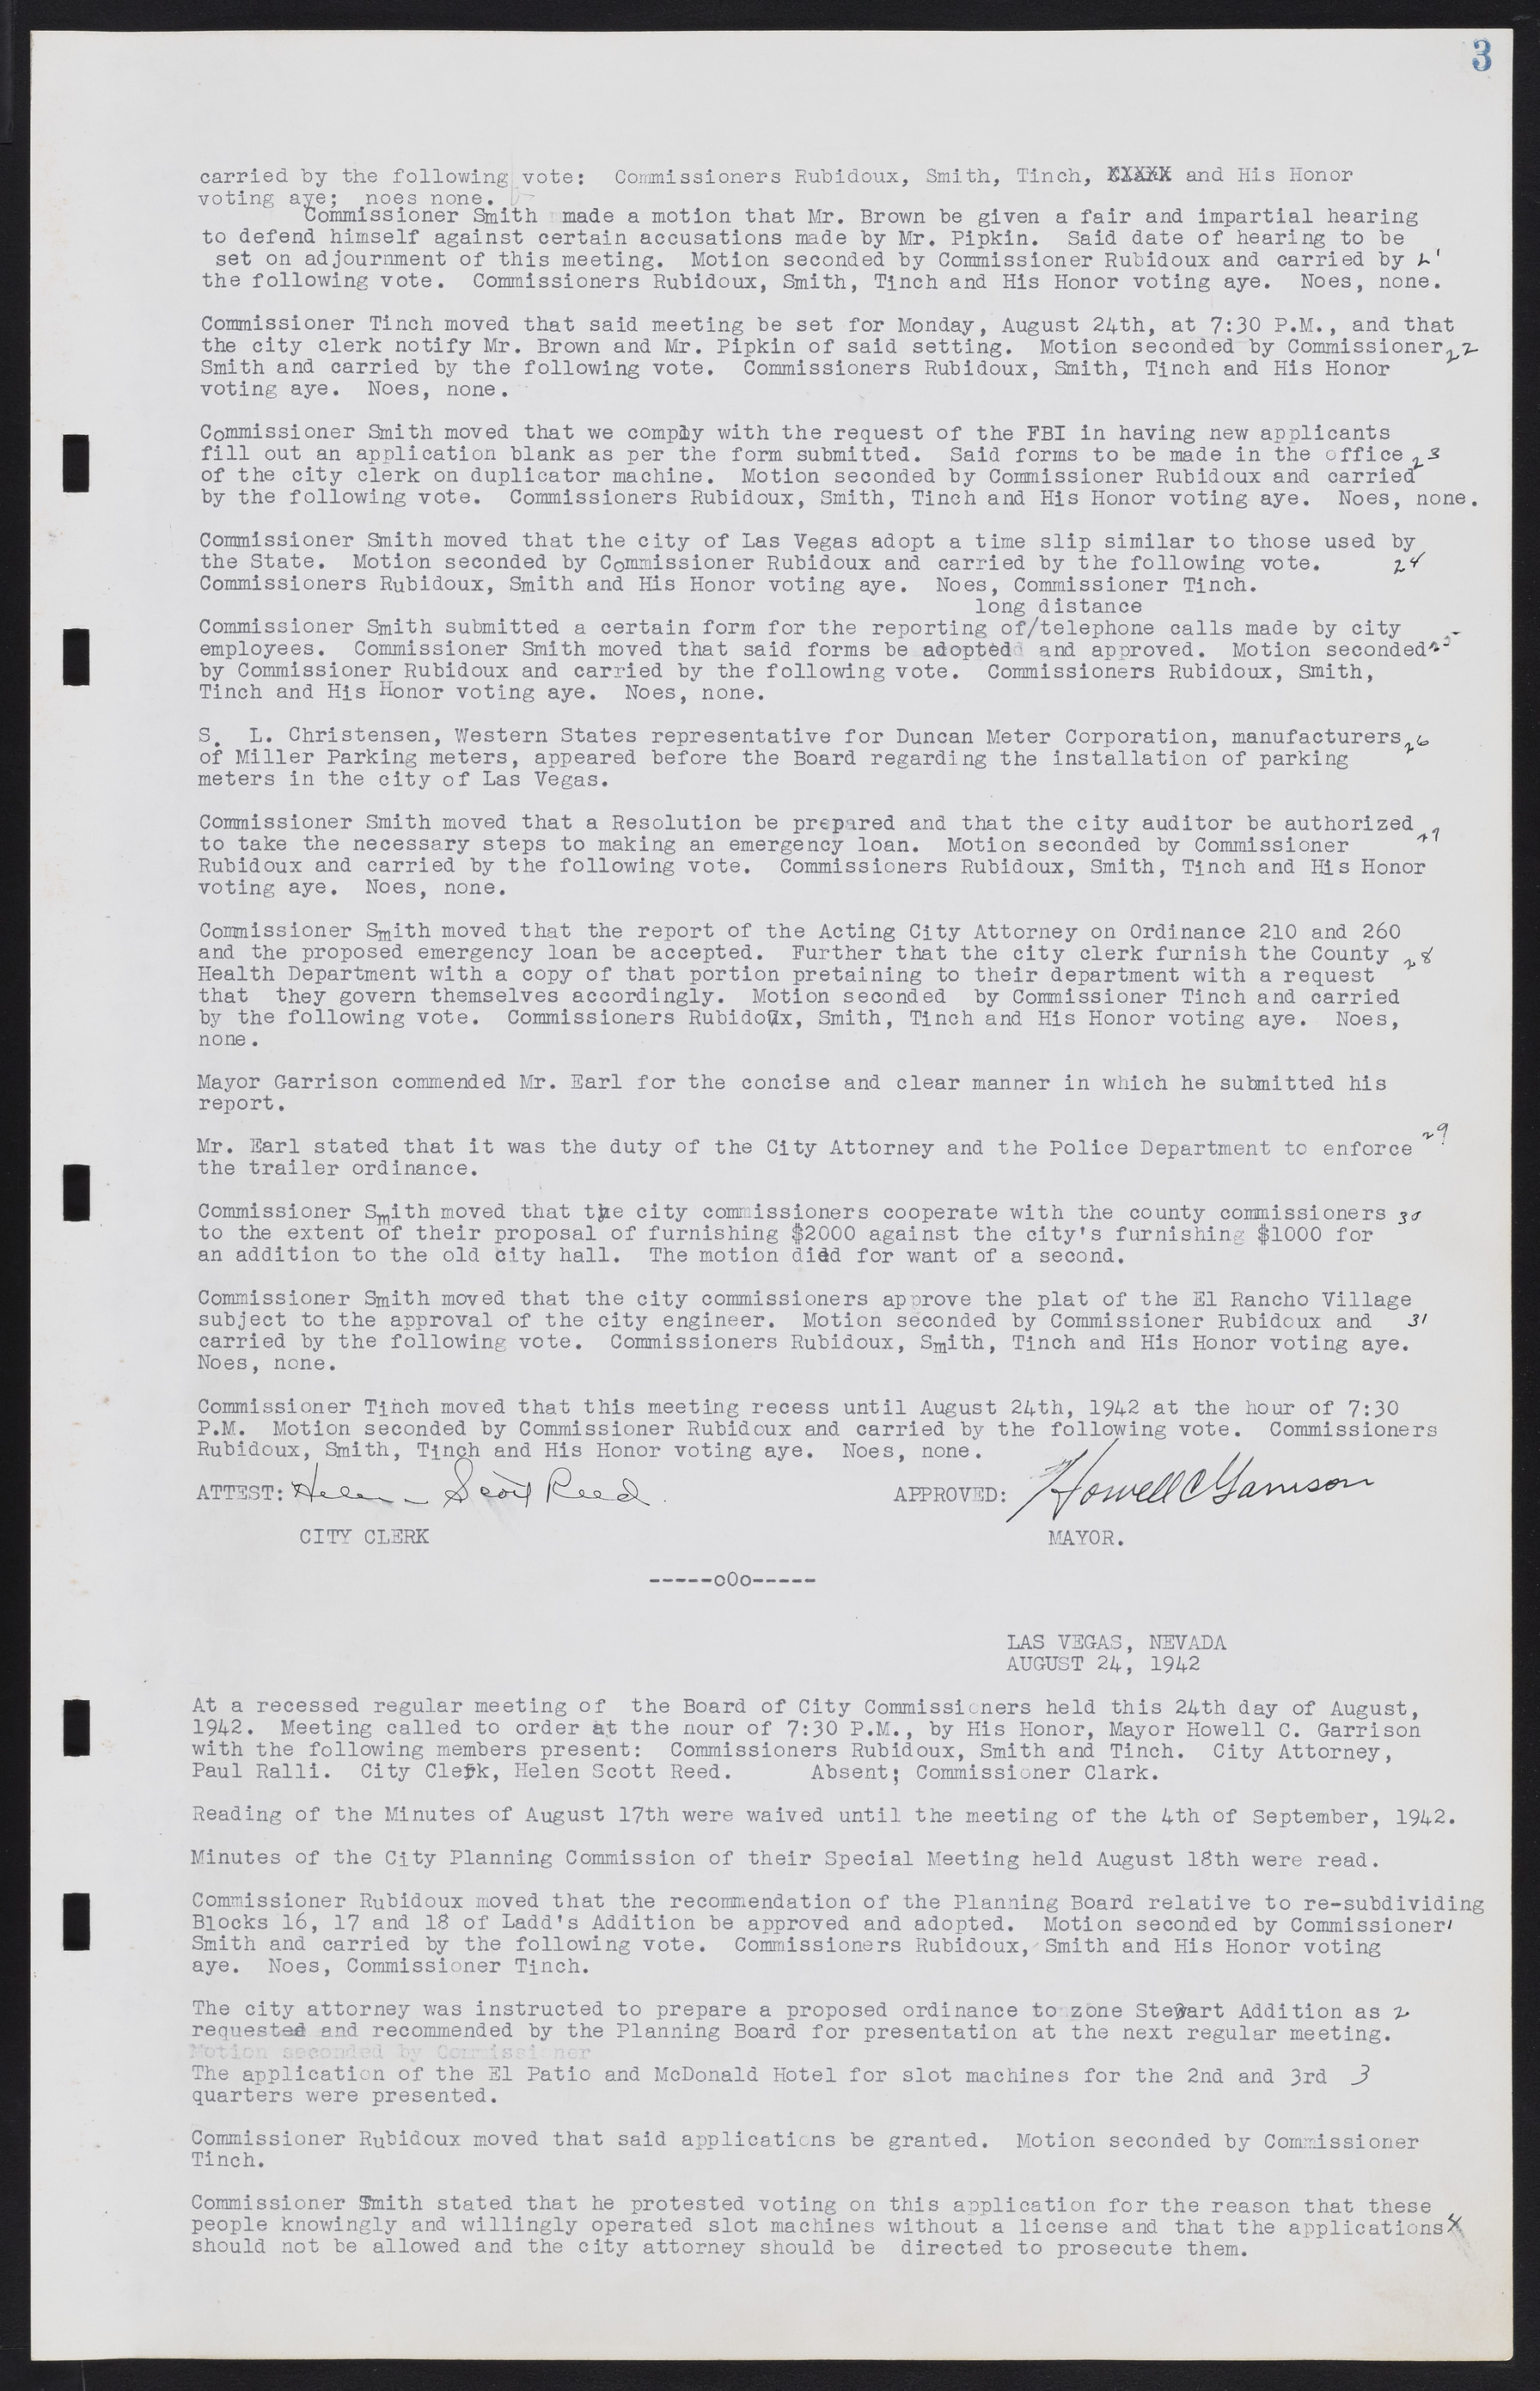 Las Vegas City Commission Minutes, August 11, 1942 to December 30, 1946, lvc000005-11